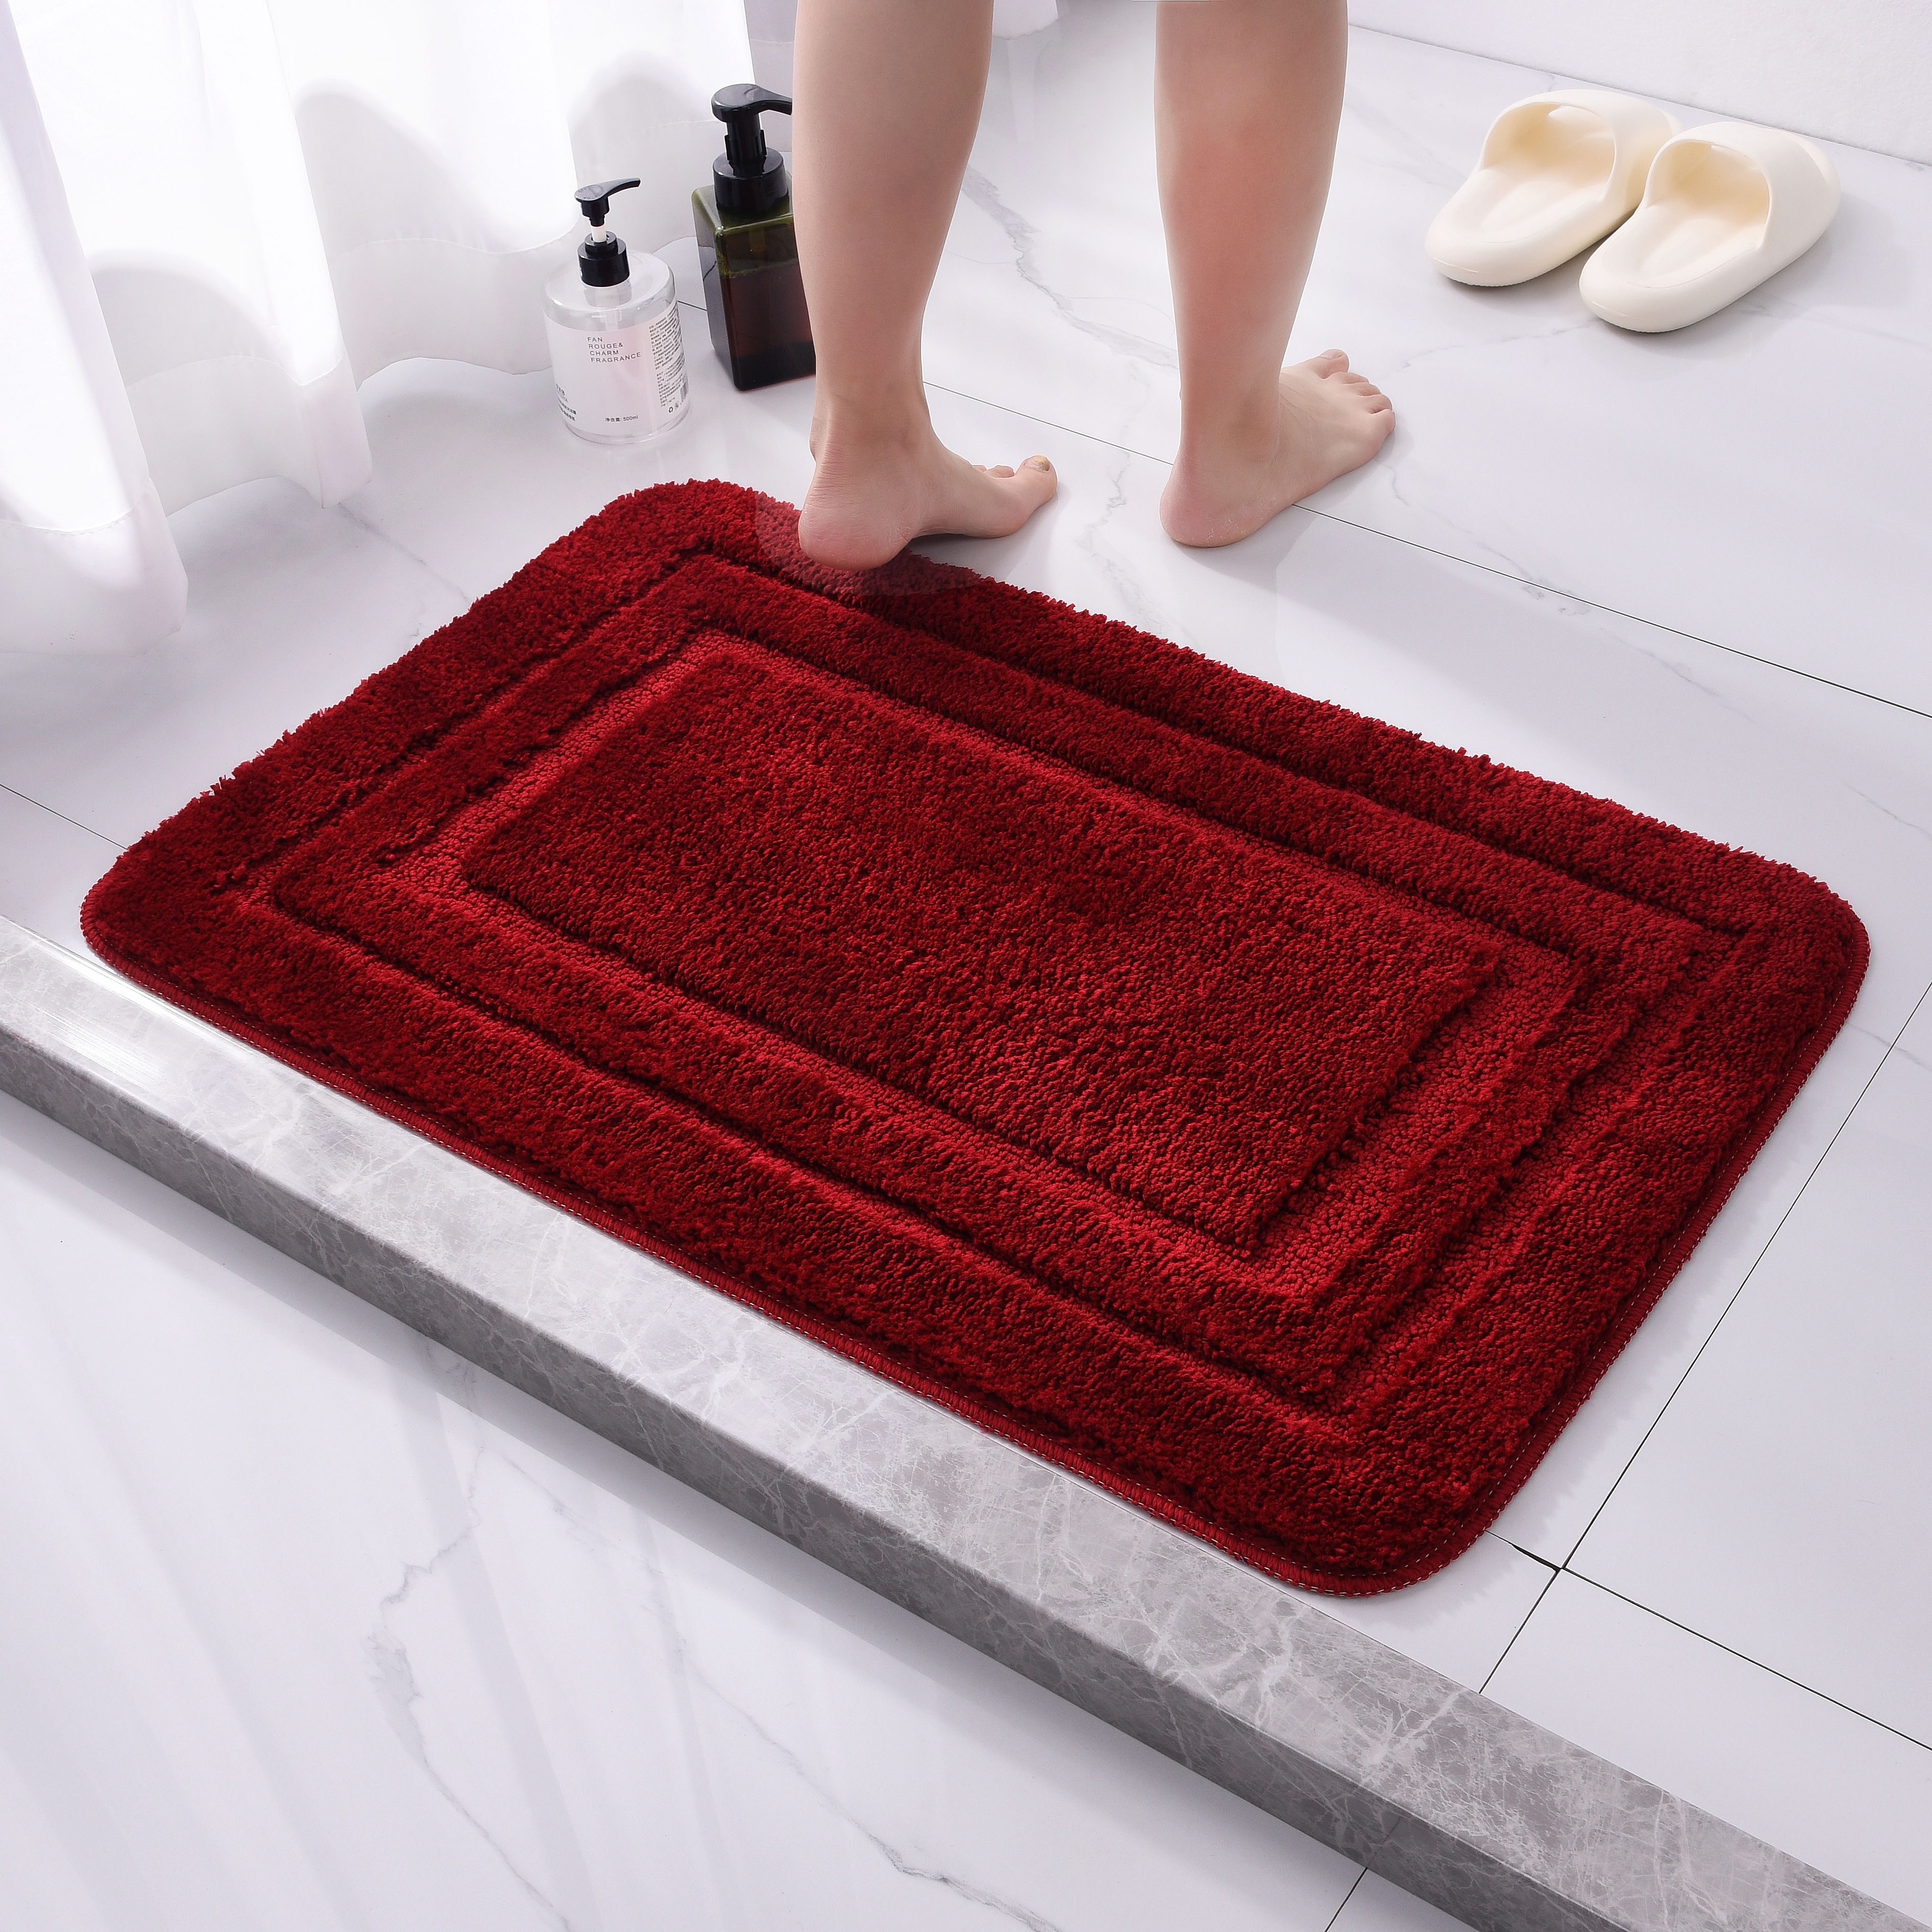 40*60cm Water Absorption Rug Bathroom Mat Indoor Absorbbs Doormat